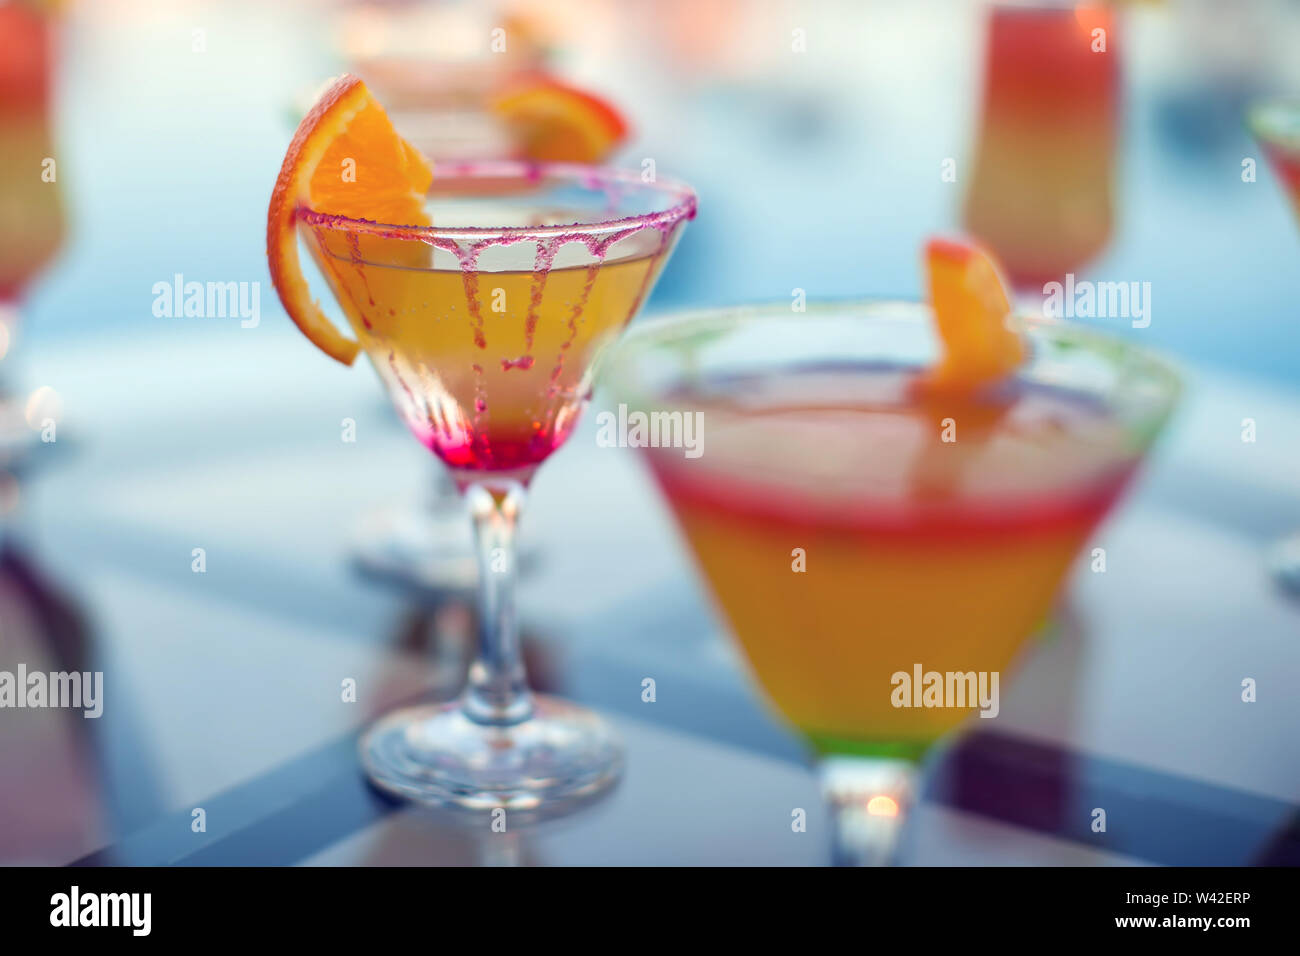 Immagine ravvicinata di cocktail colorati. Alimenti e bevande Foto Stock